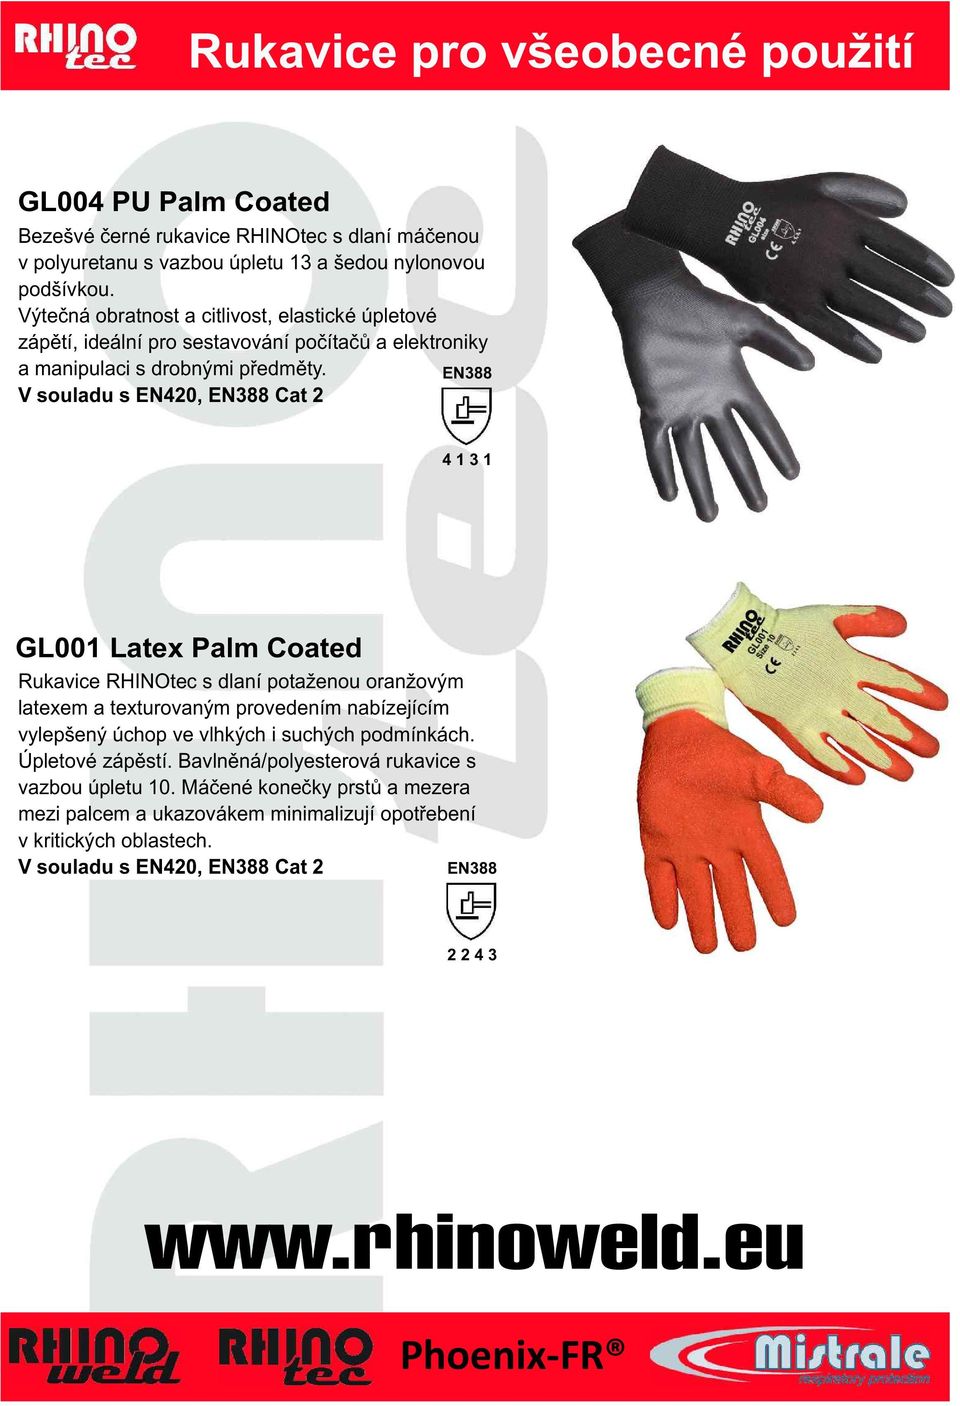 EN388 V souladu s EN420, EN388 Cat 2 4 1 3 1 GL001 Latex Palm Coated Rukavice RHINOtec s dlaní potaženou oranžovým latexem a texturovaným provedením nabízejícím vylepšený úchop ve vlhkých